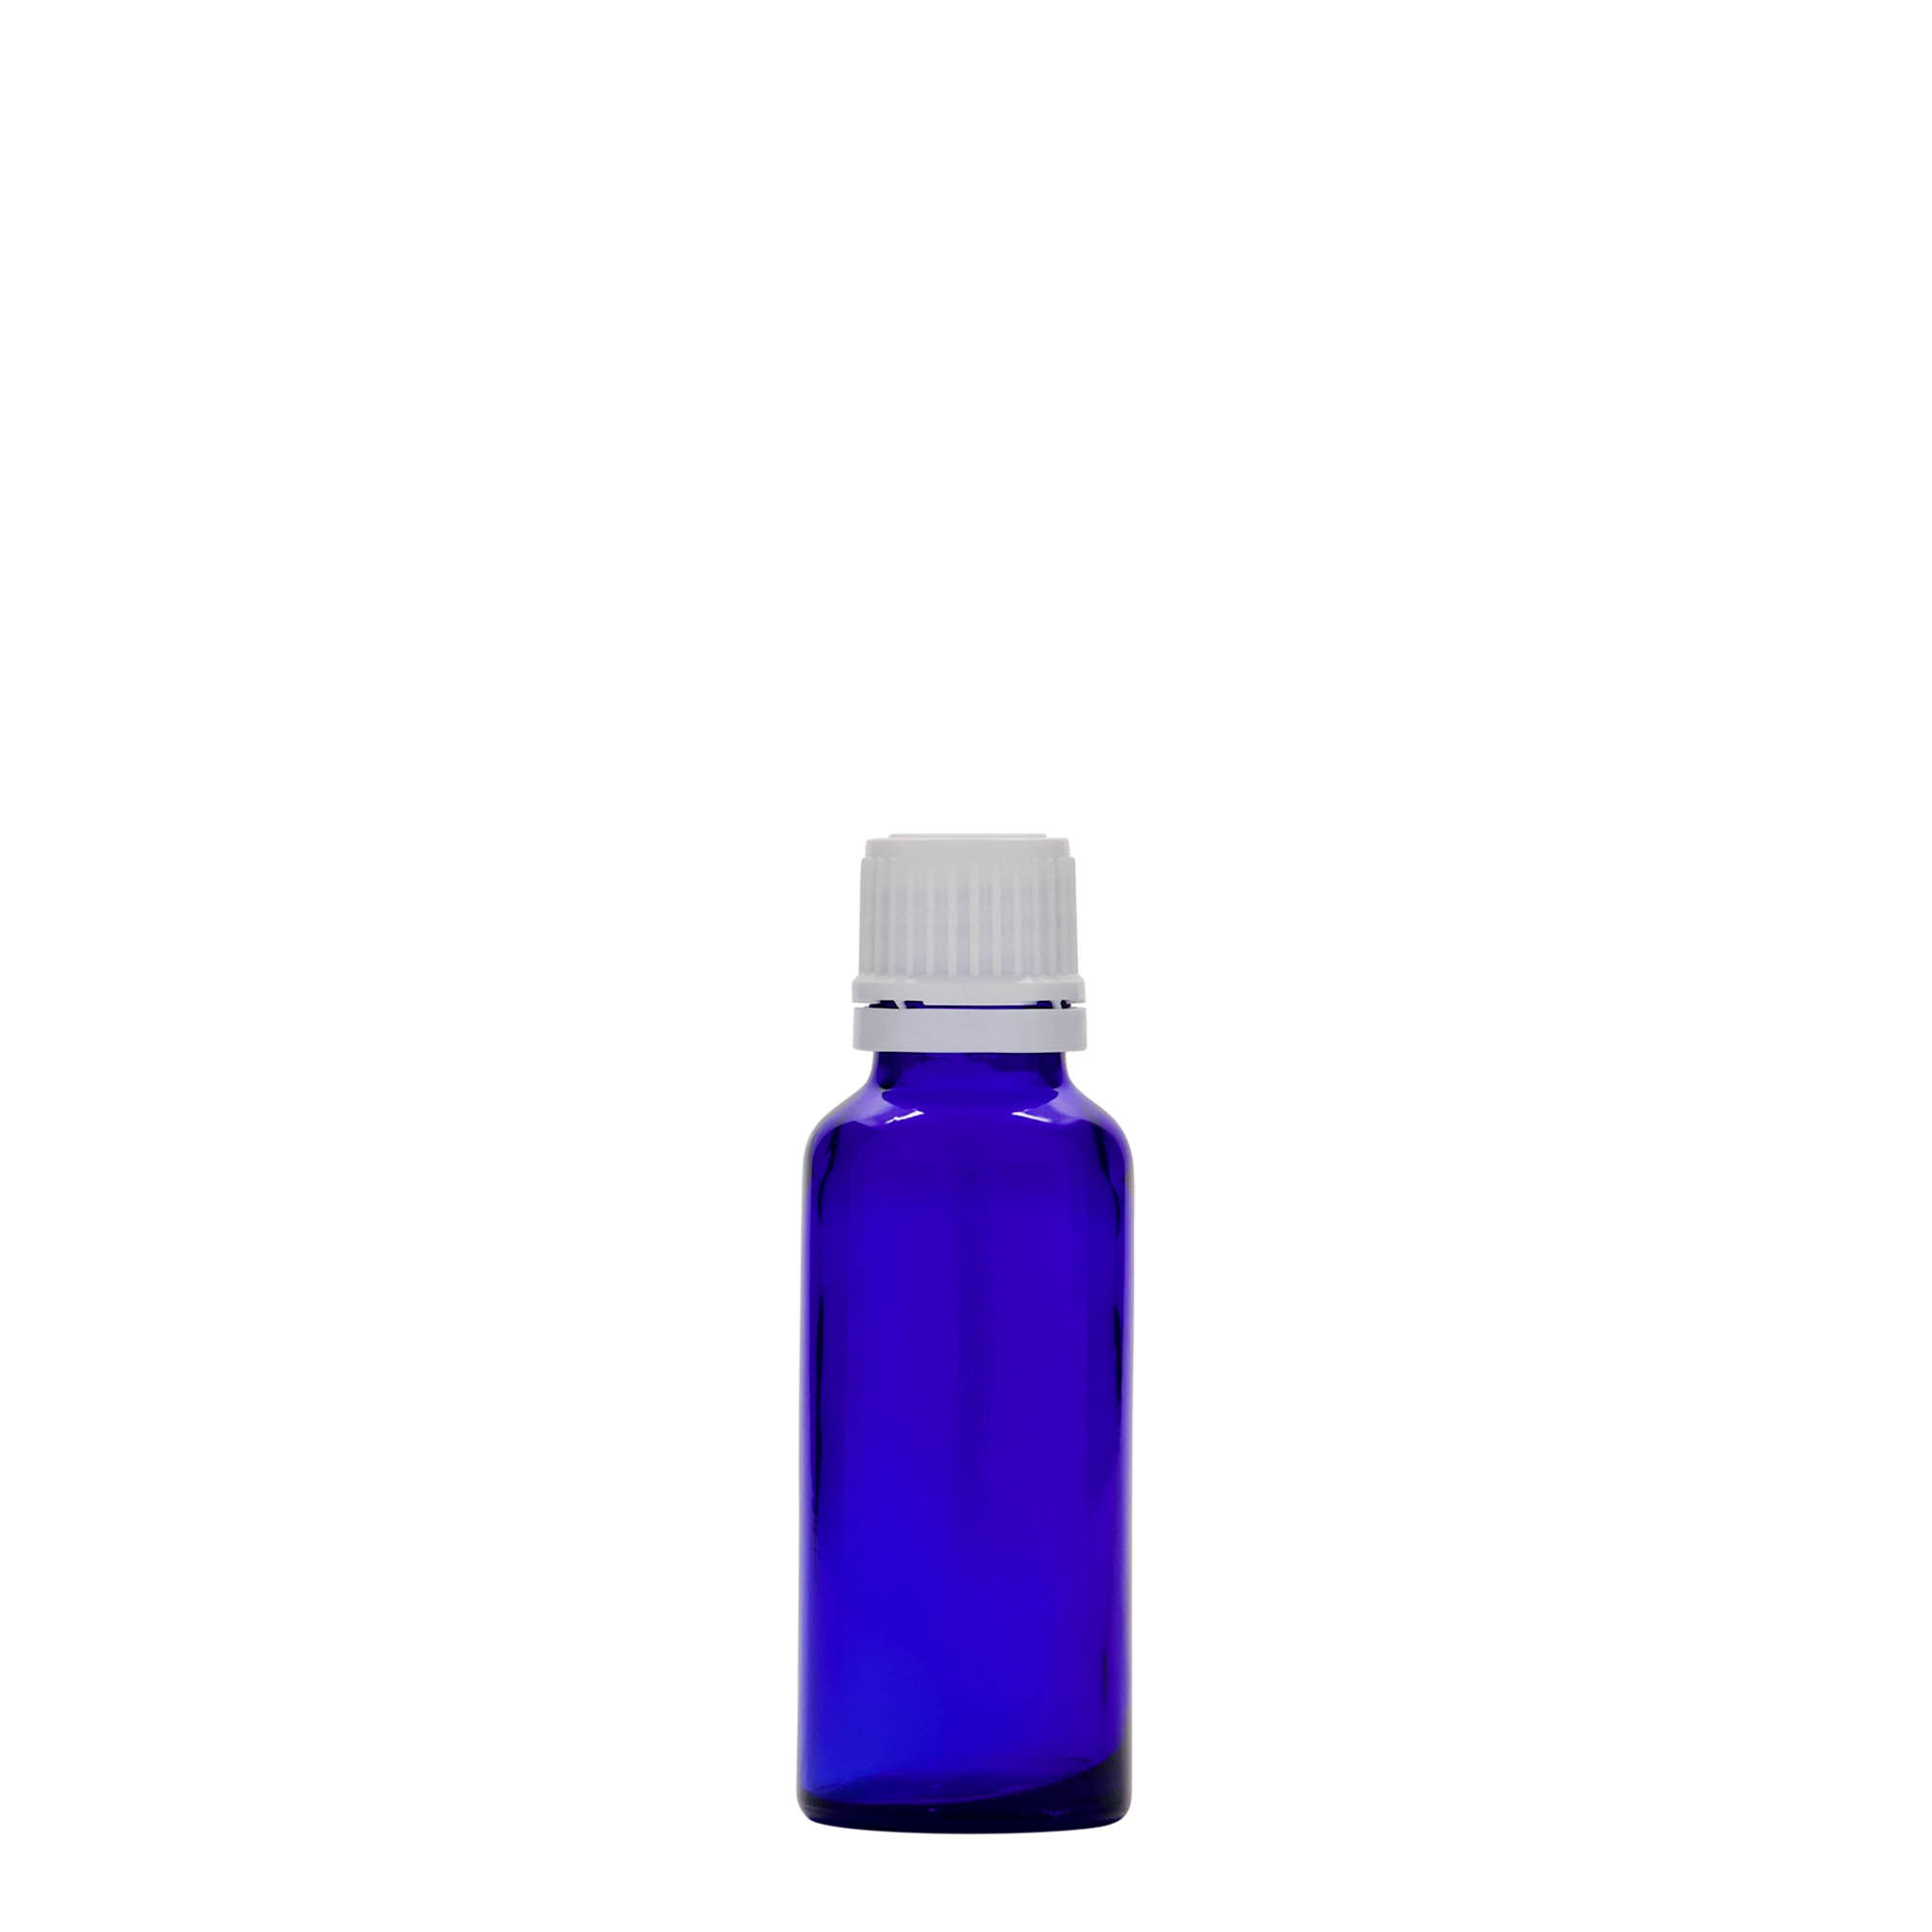 30 ml-es patikai üveg, üveg, királykék, szájnyílás: DIN 18